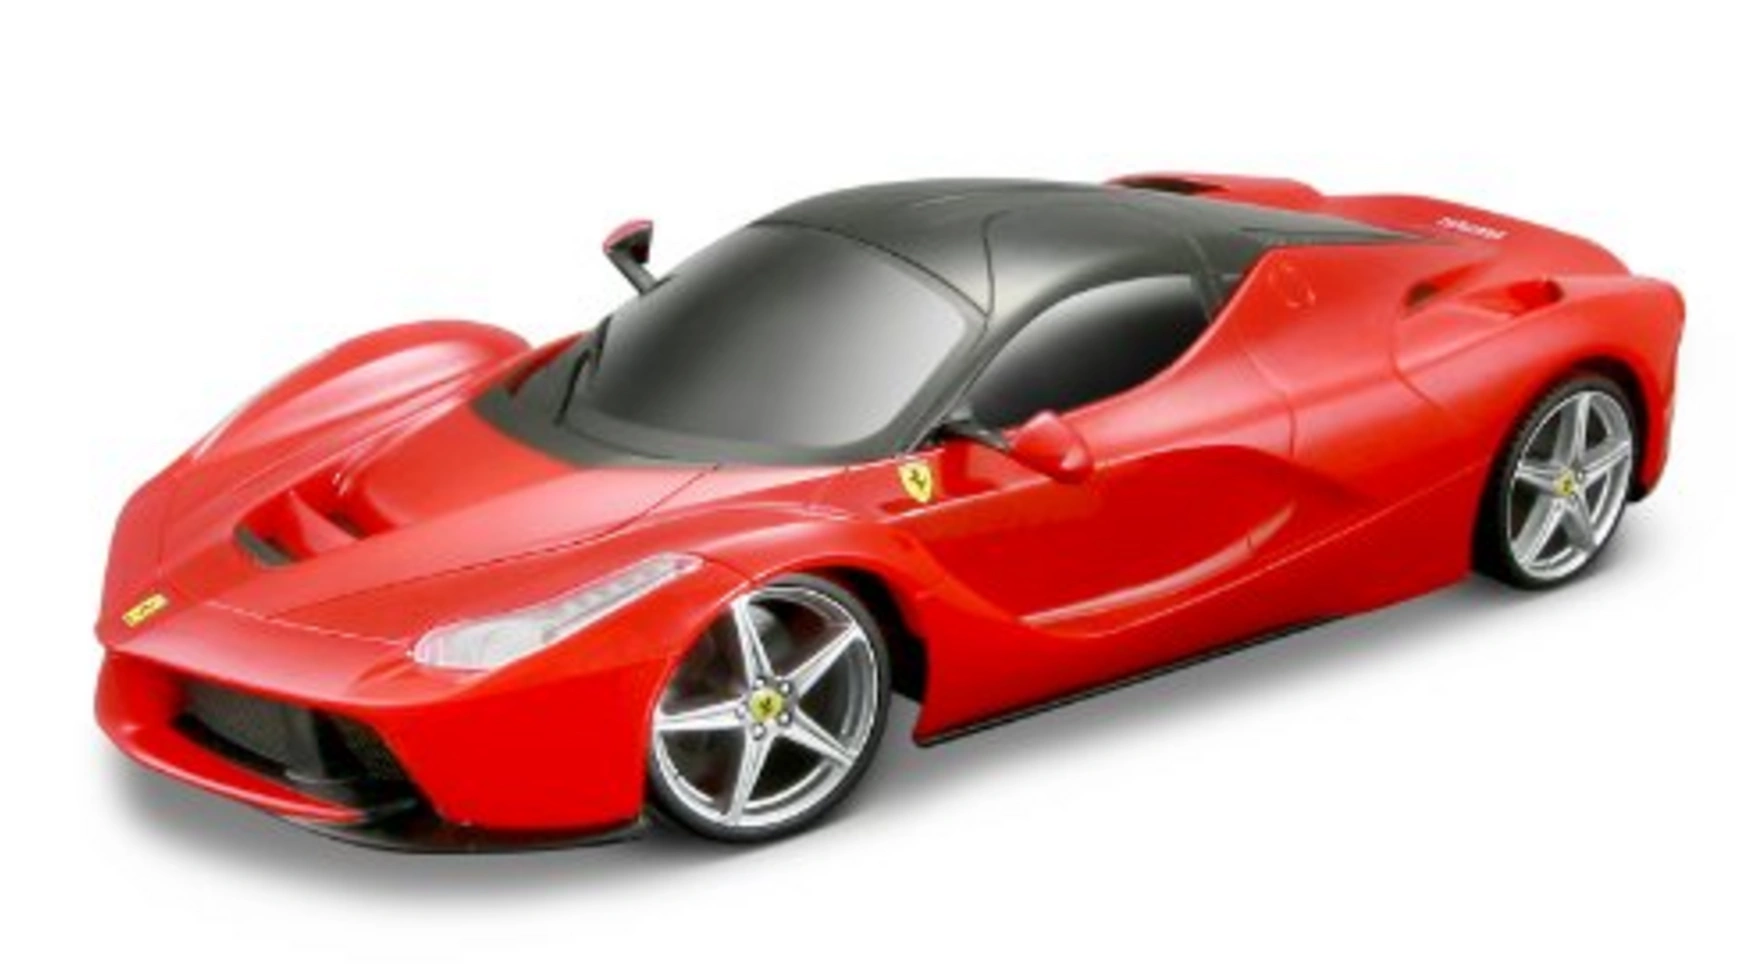 Maisto Tech Радиоуправляемый Ferrari LaFerrari 1:24 цена и фото